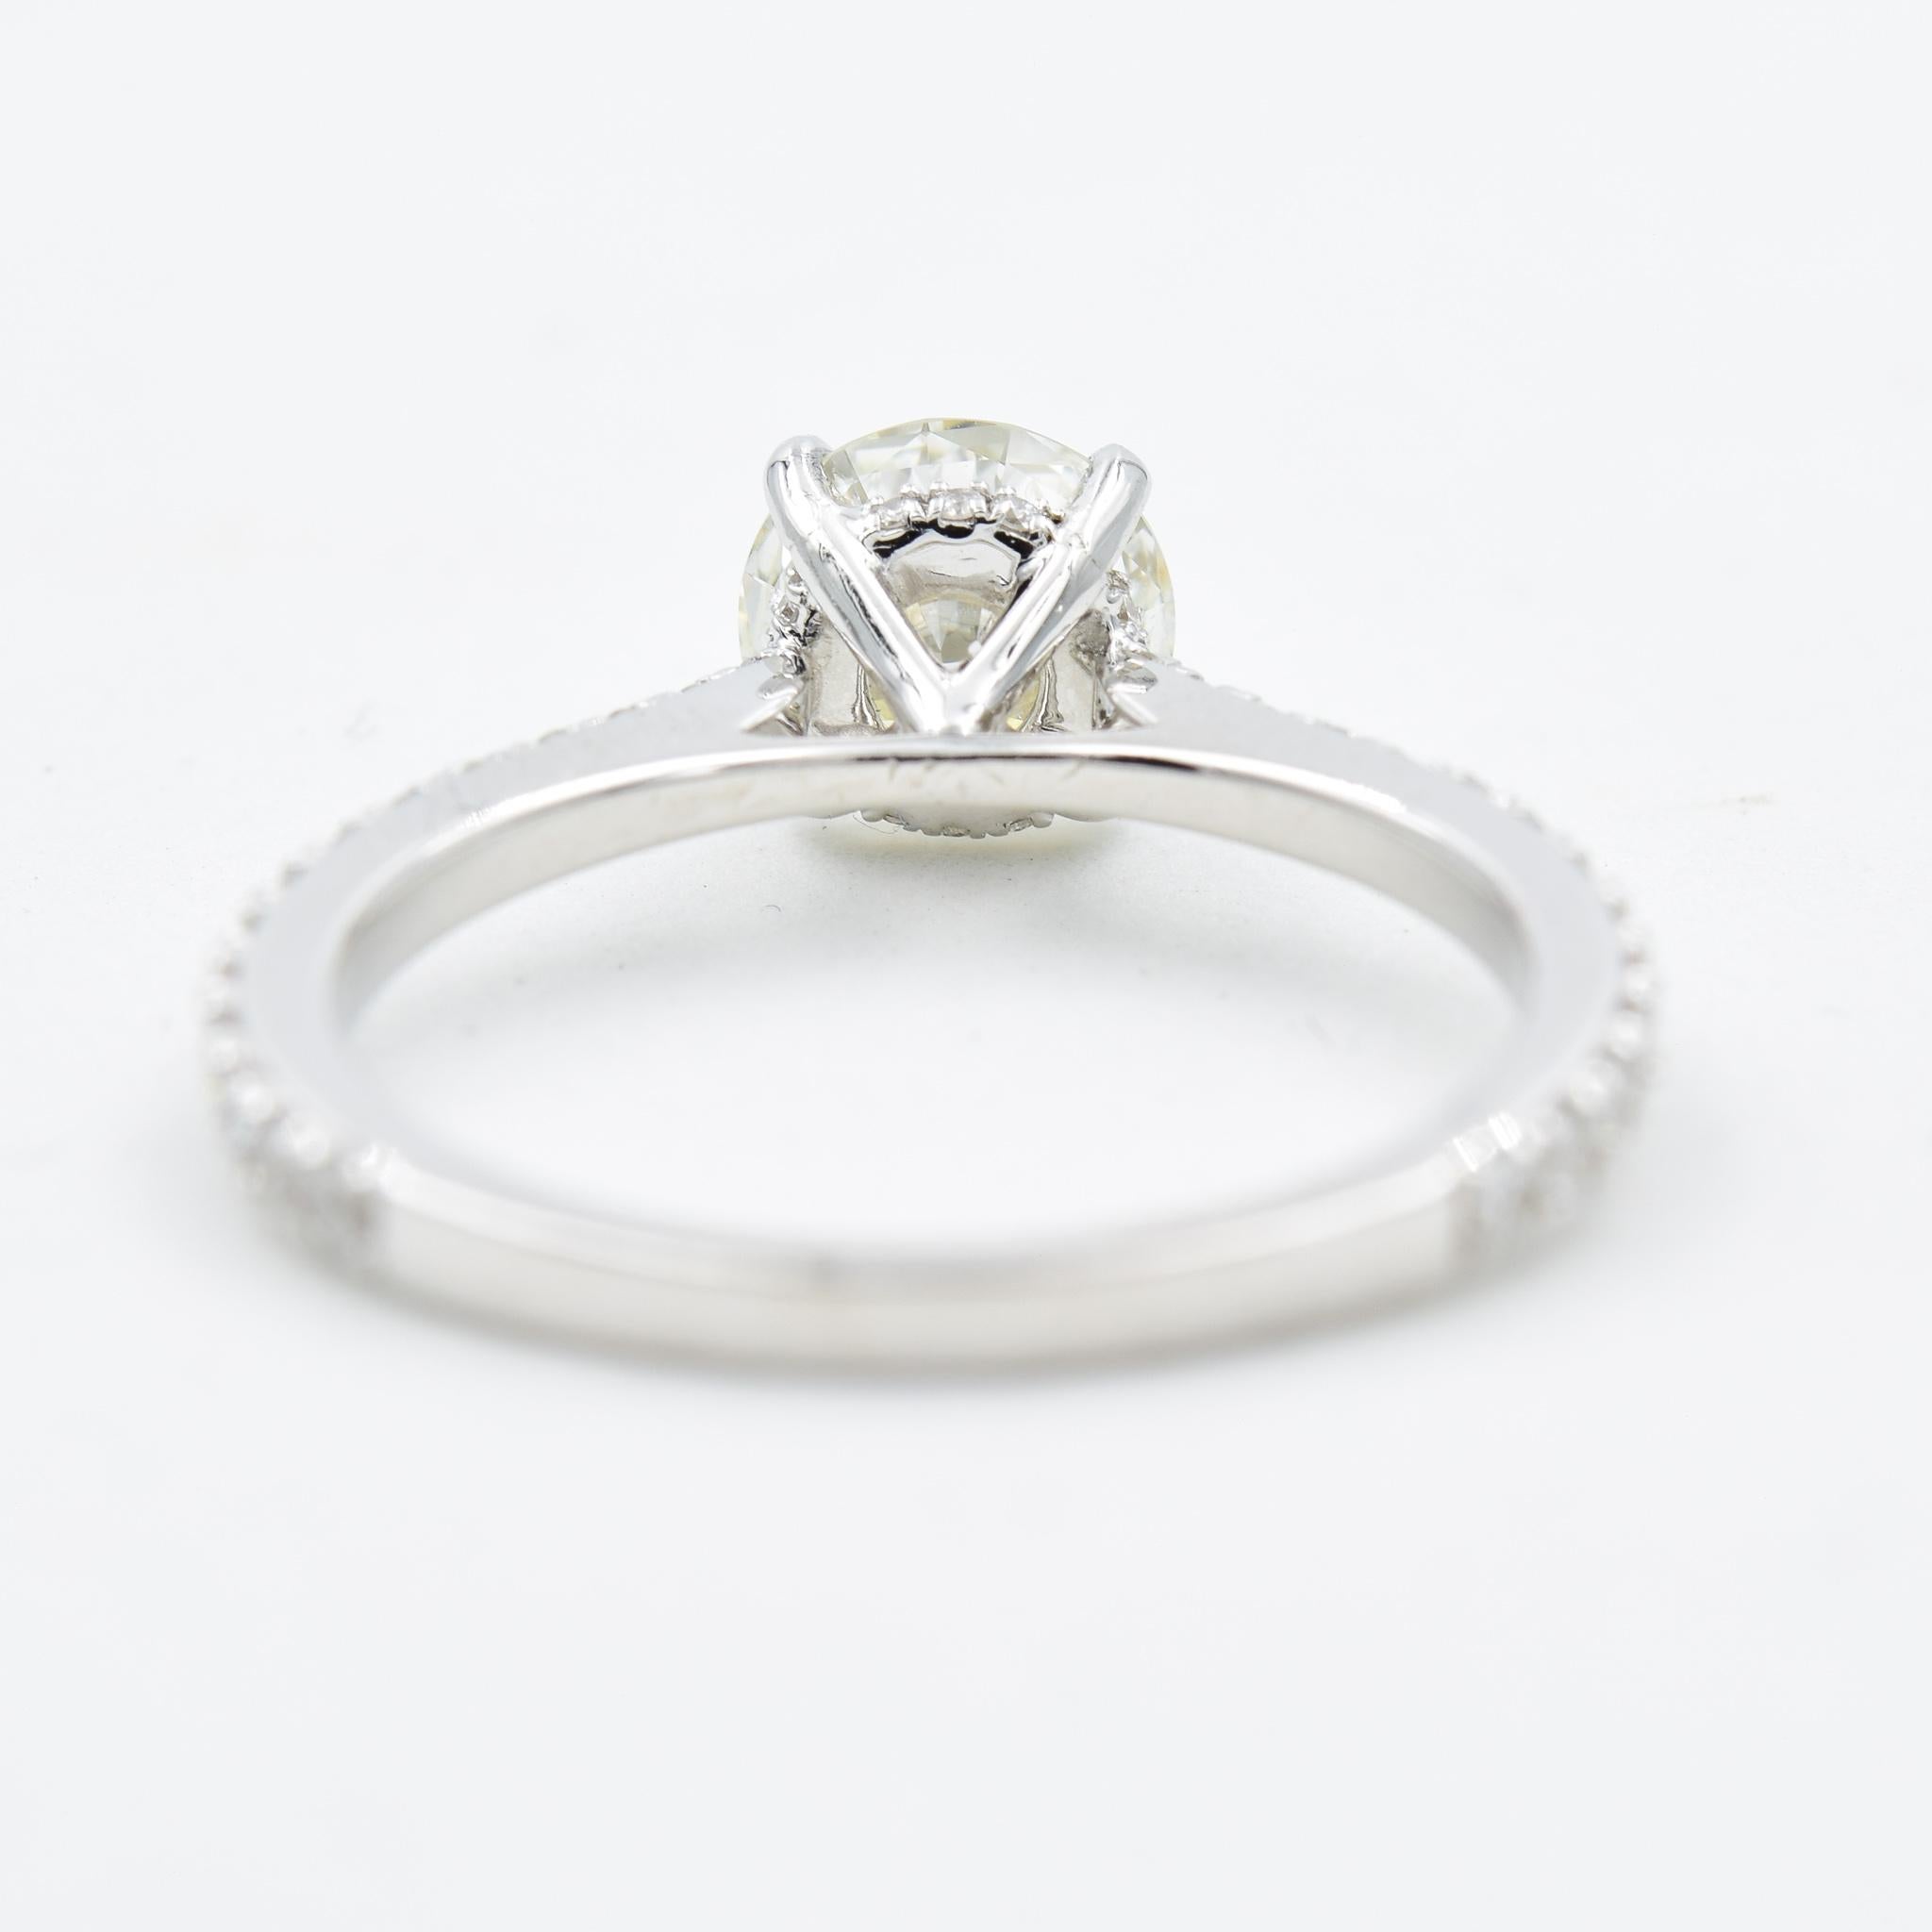 Round Cut GIA Certified 1.15 Carat Round Diamond Engagement Ring 1.54 Carat